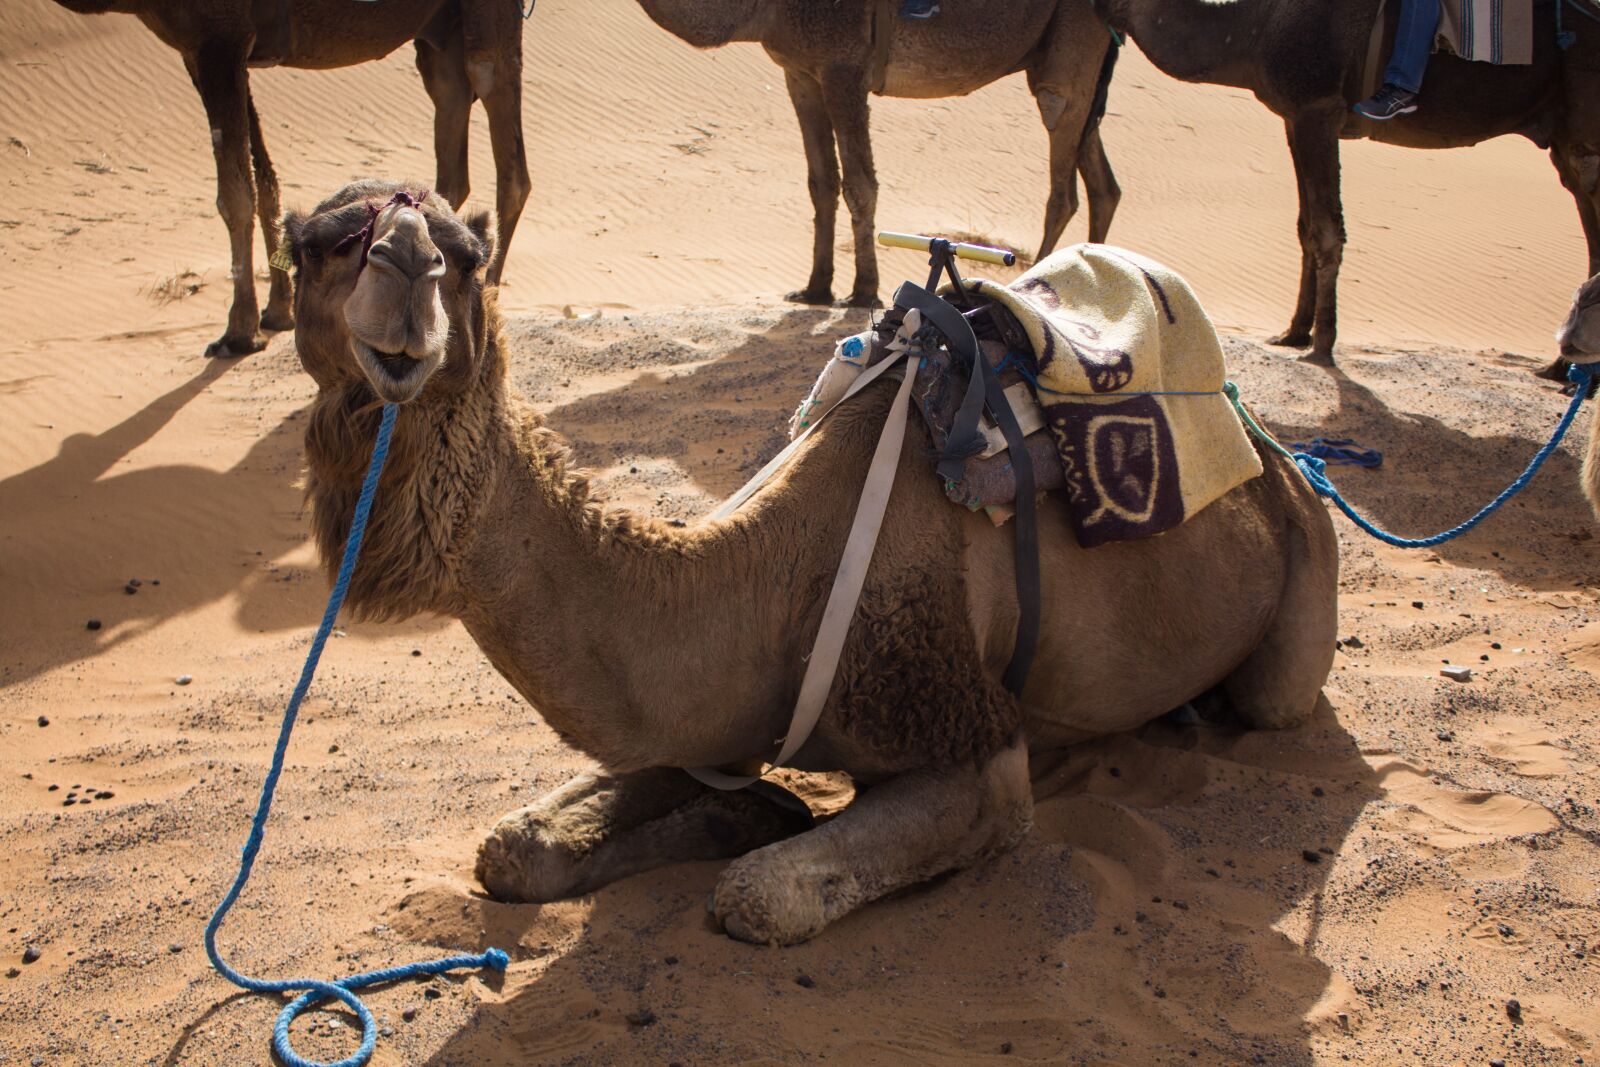 Canon EOS 1200D (EOS Rebel T5 / EOS Kiss X70 / EOS Hi) sample photo. Dromedary, desert, camel photography